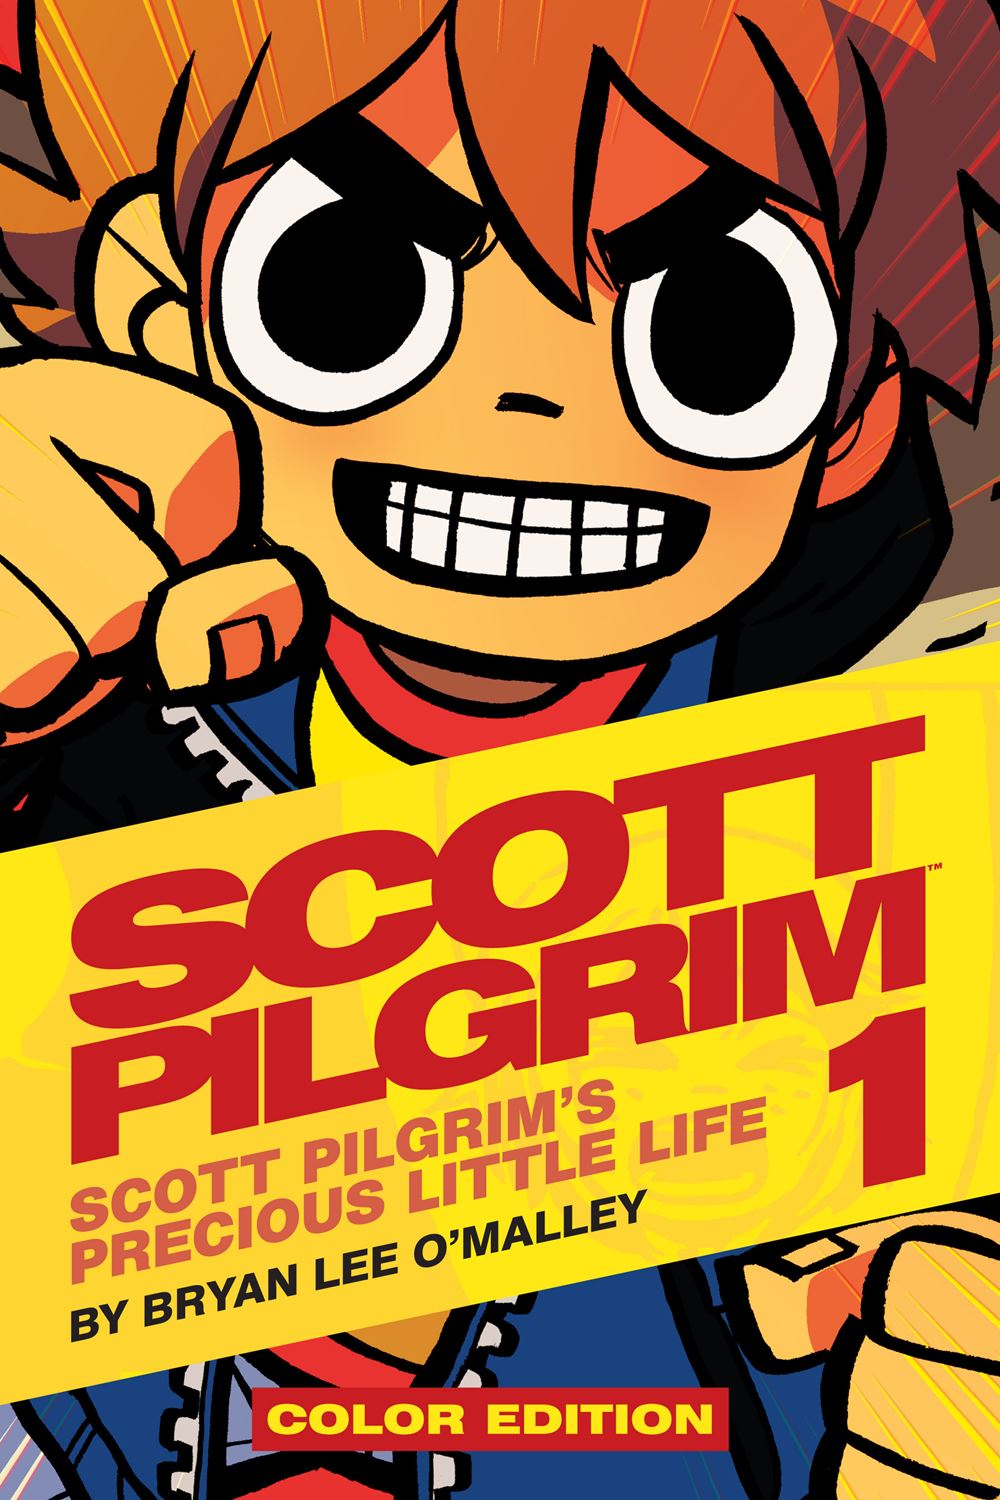 Scott pilgrim comics online